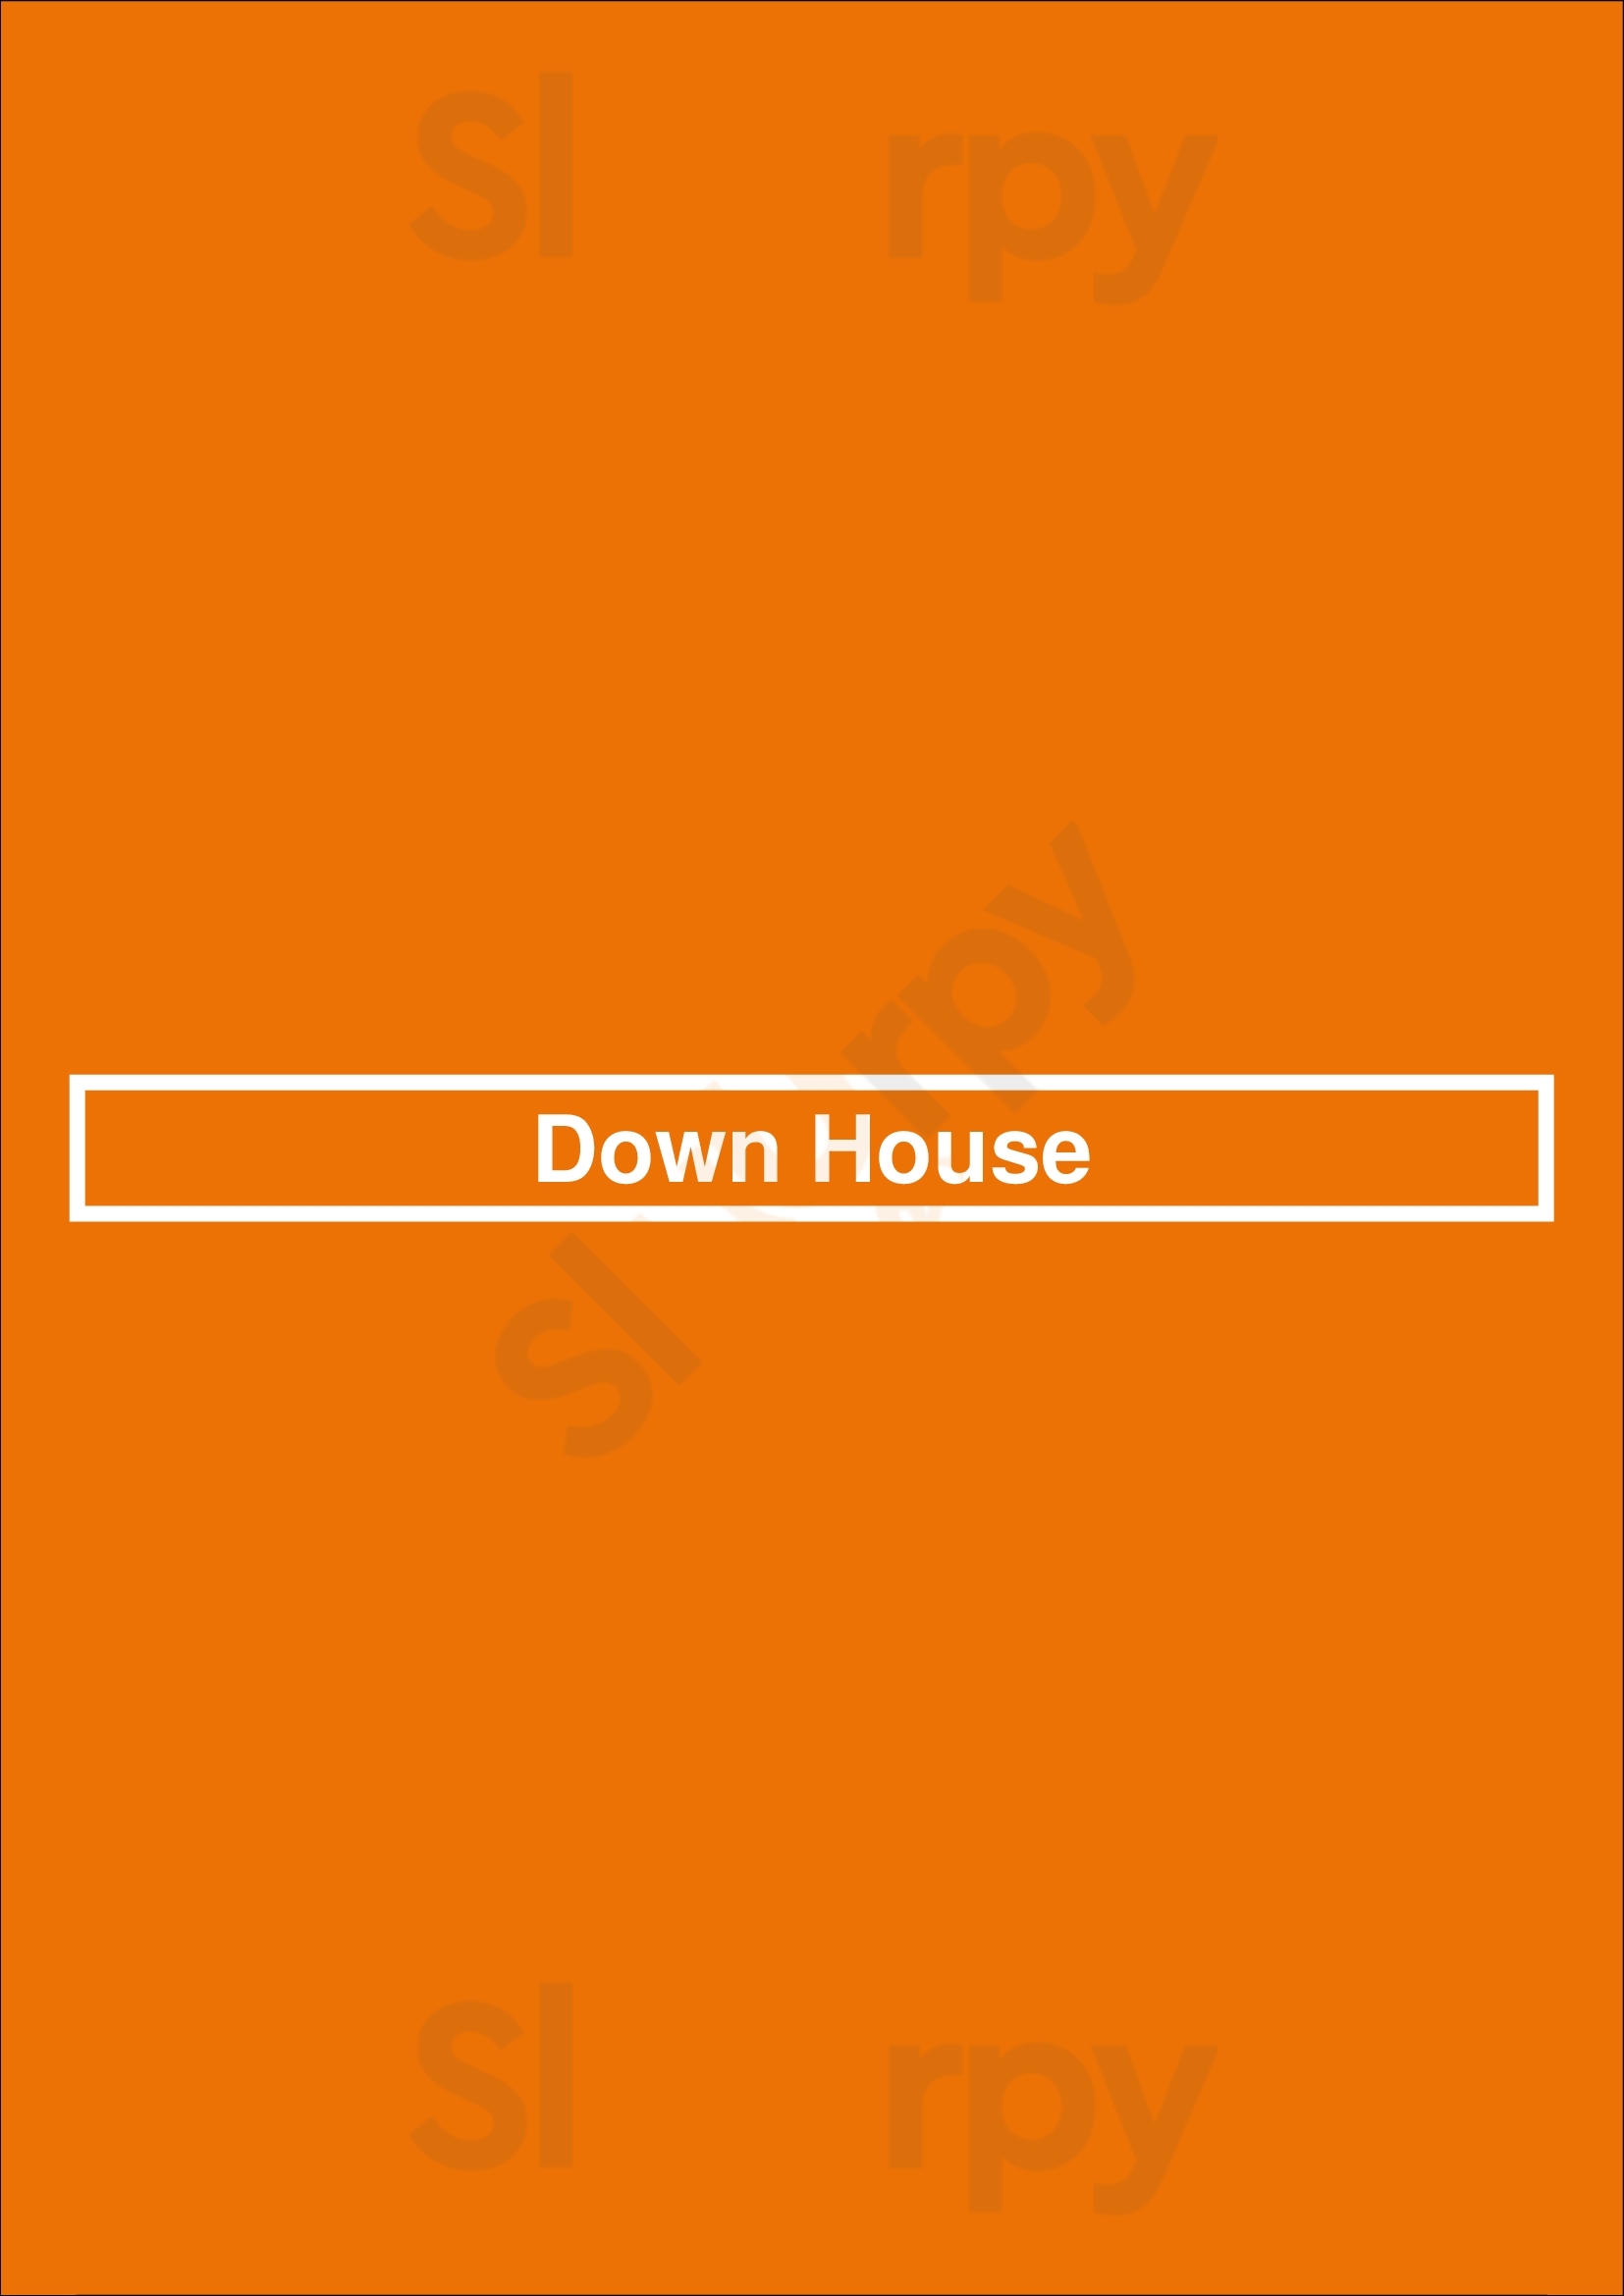 Down House Houston Menu - 1